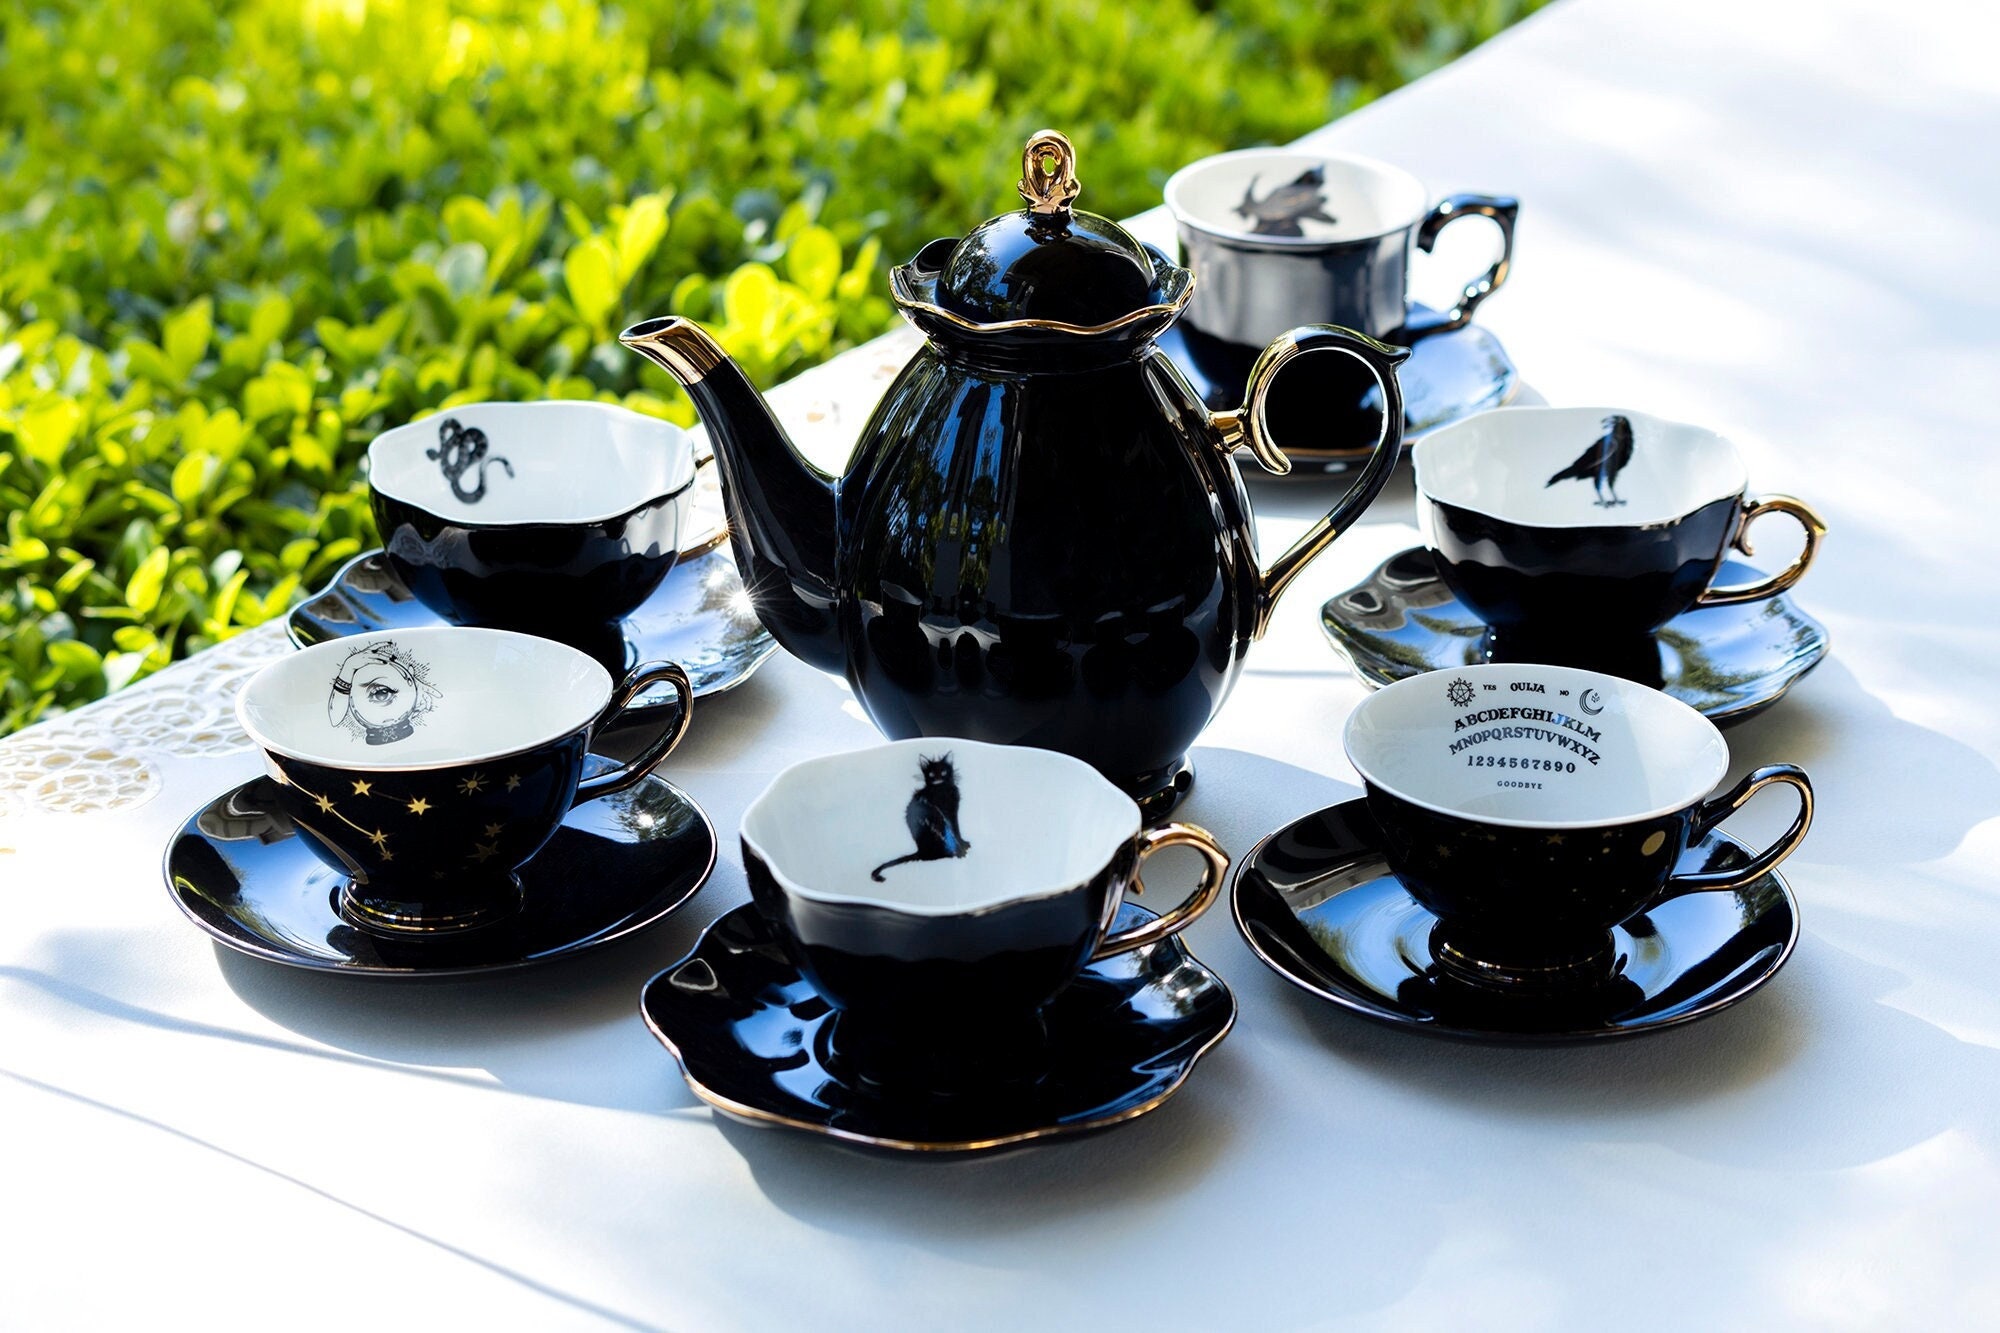 Mushroom Tea Pot  Tea pots, Novelty teapots, Antique tea